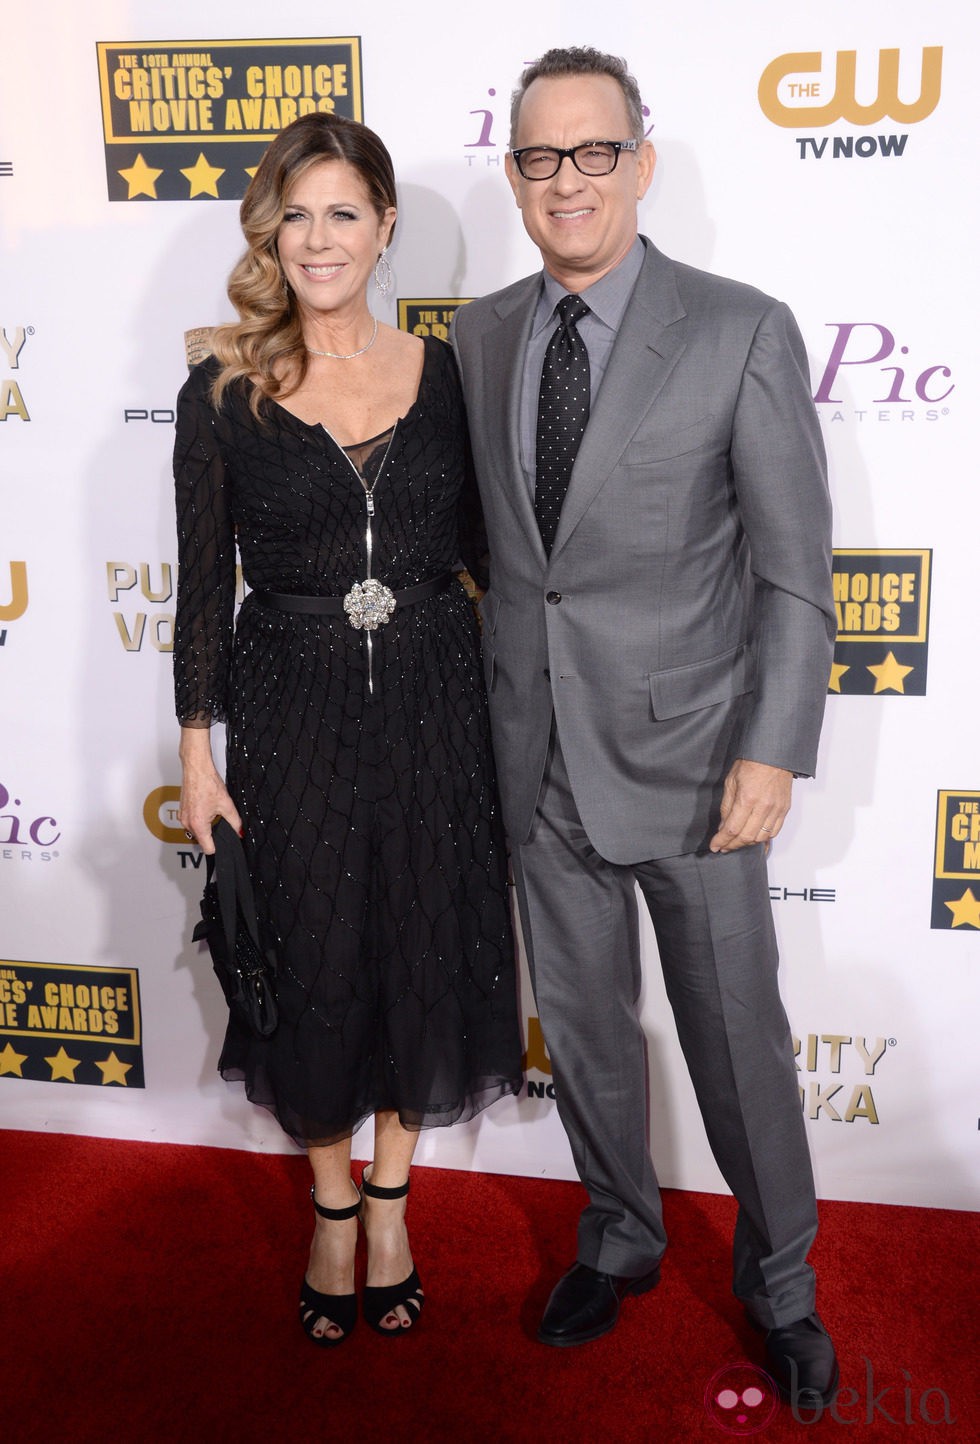 Tom Hanks y Rita Wilson en la alfombra roja de los Critics' Choice Movie Awards 2014